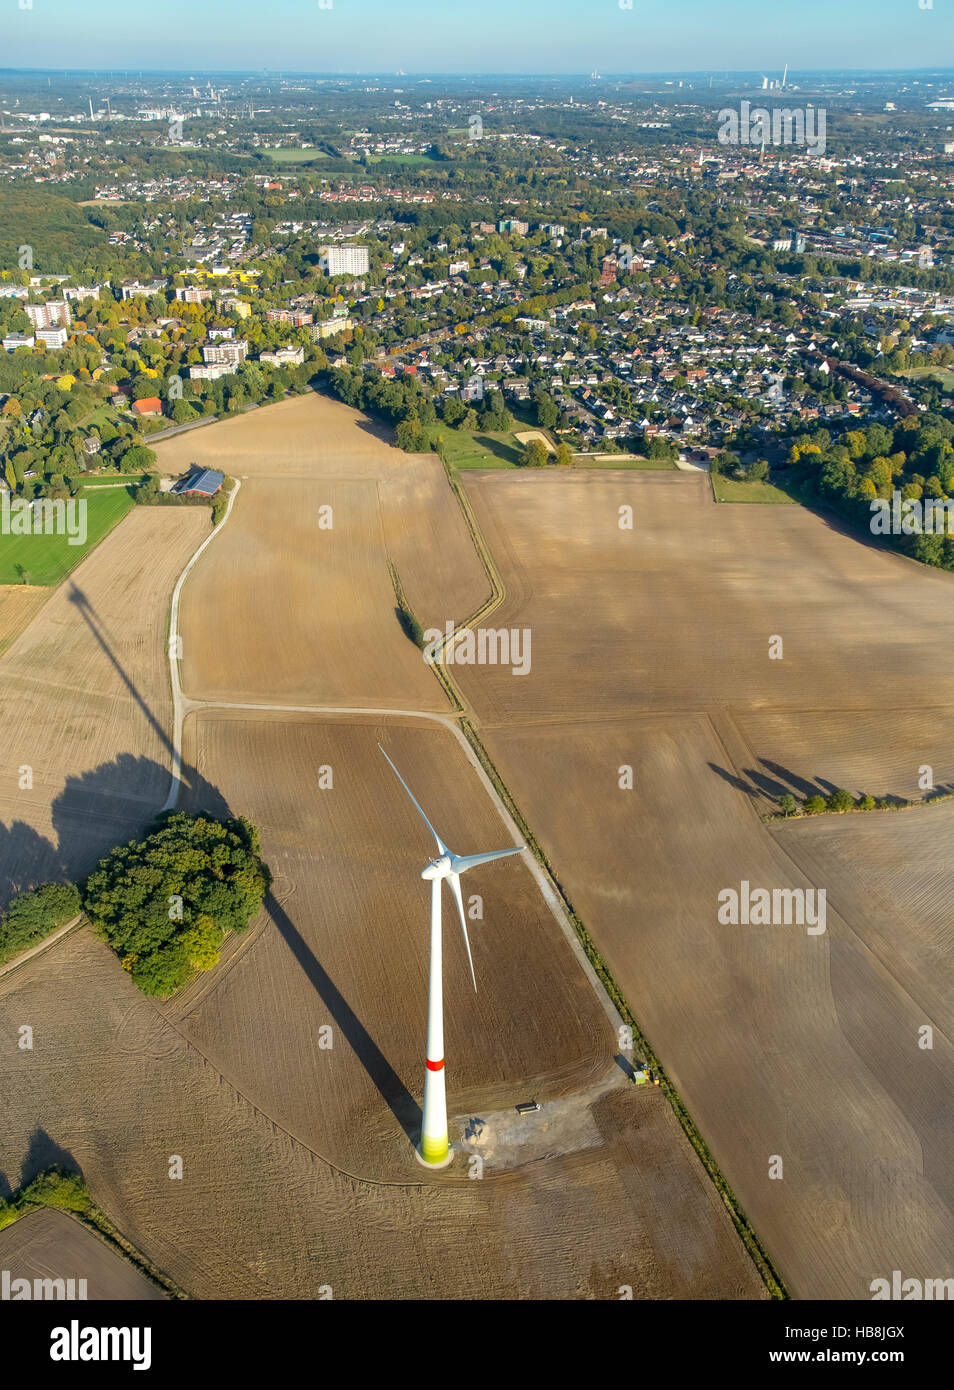 Luftaufnahme, Windkraftanlagen in der Nähe von Wohngebieten Rentfort, Gladbeck, Ruhrgebiet, Nordrhein-Westfalen, Deutschland, Europa, Antenne Stockfoto